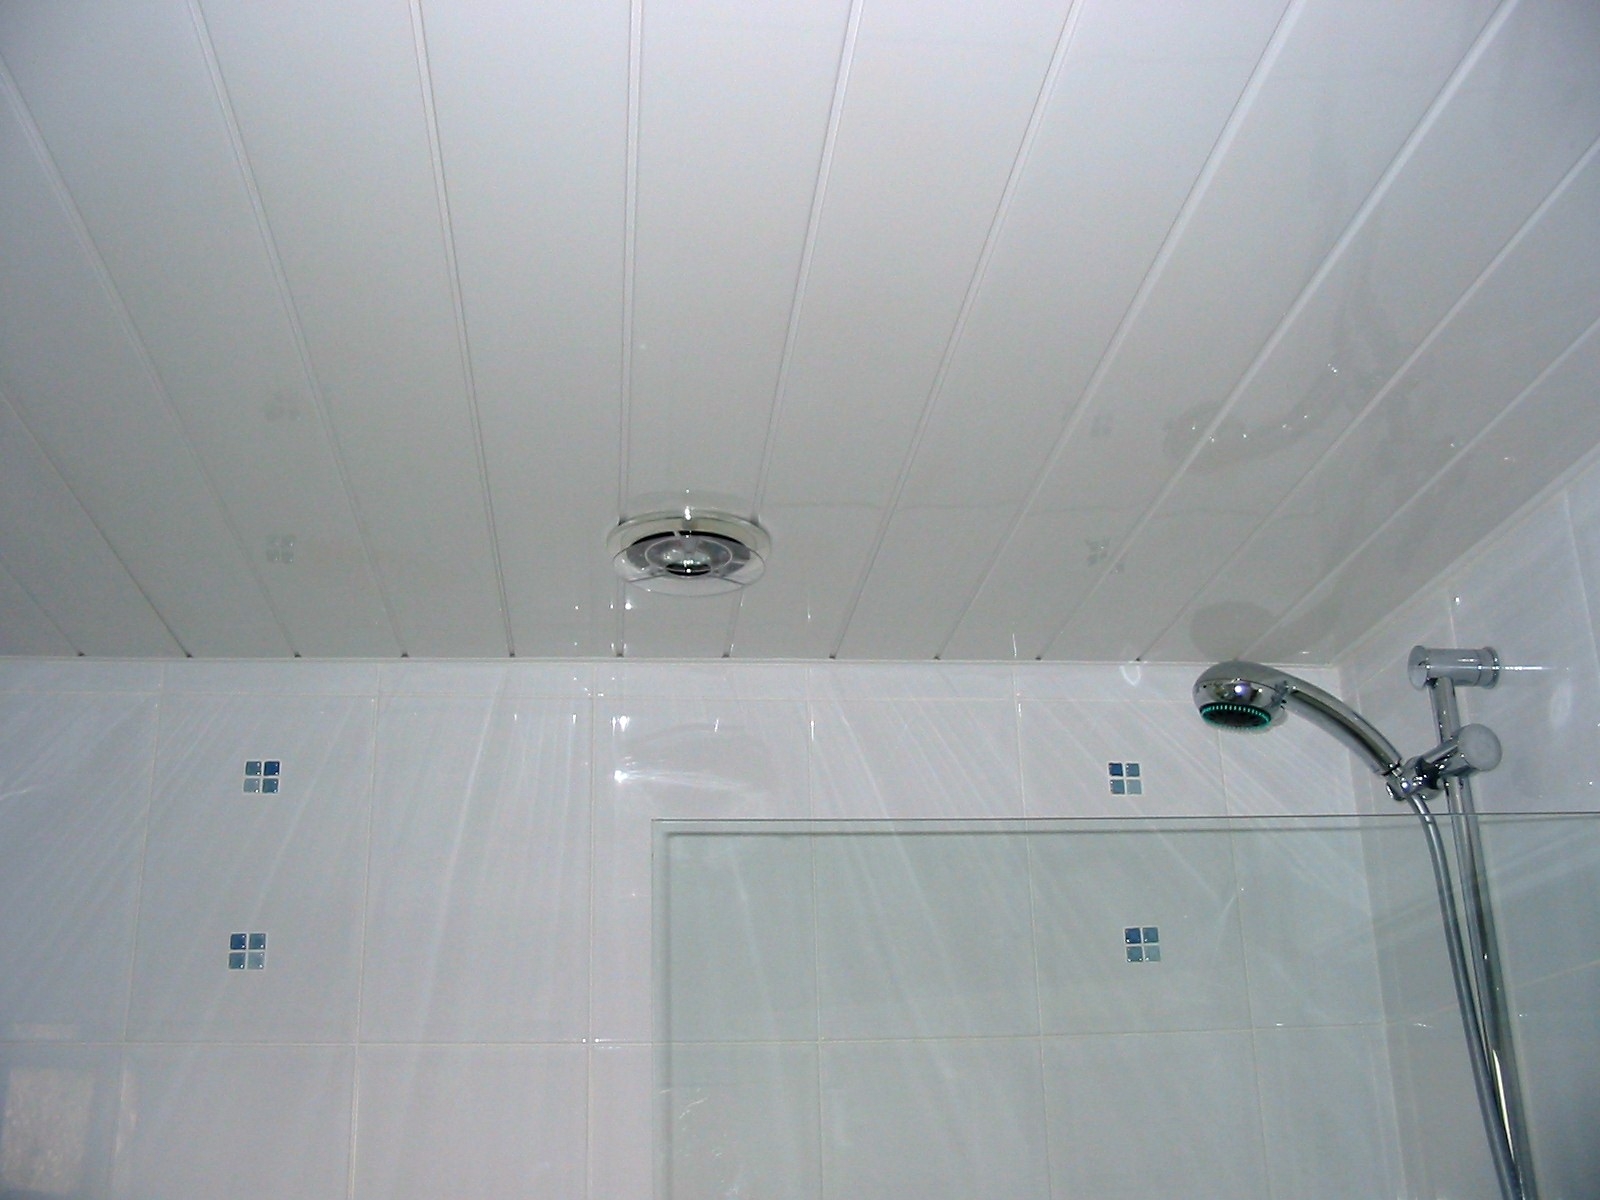 Bathroom Ceiling Tile Ideas Bathroom Ceiling Tile Ideas waterproof ceiling tiles bathroom images tile flooring design ideas 1600 X 1200